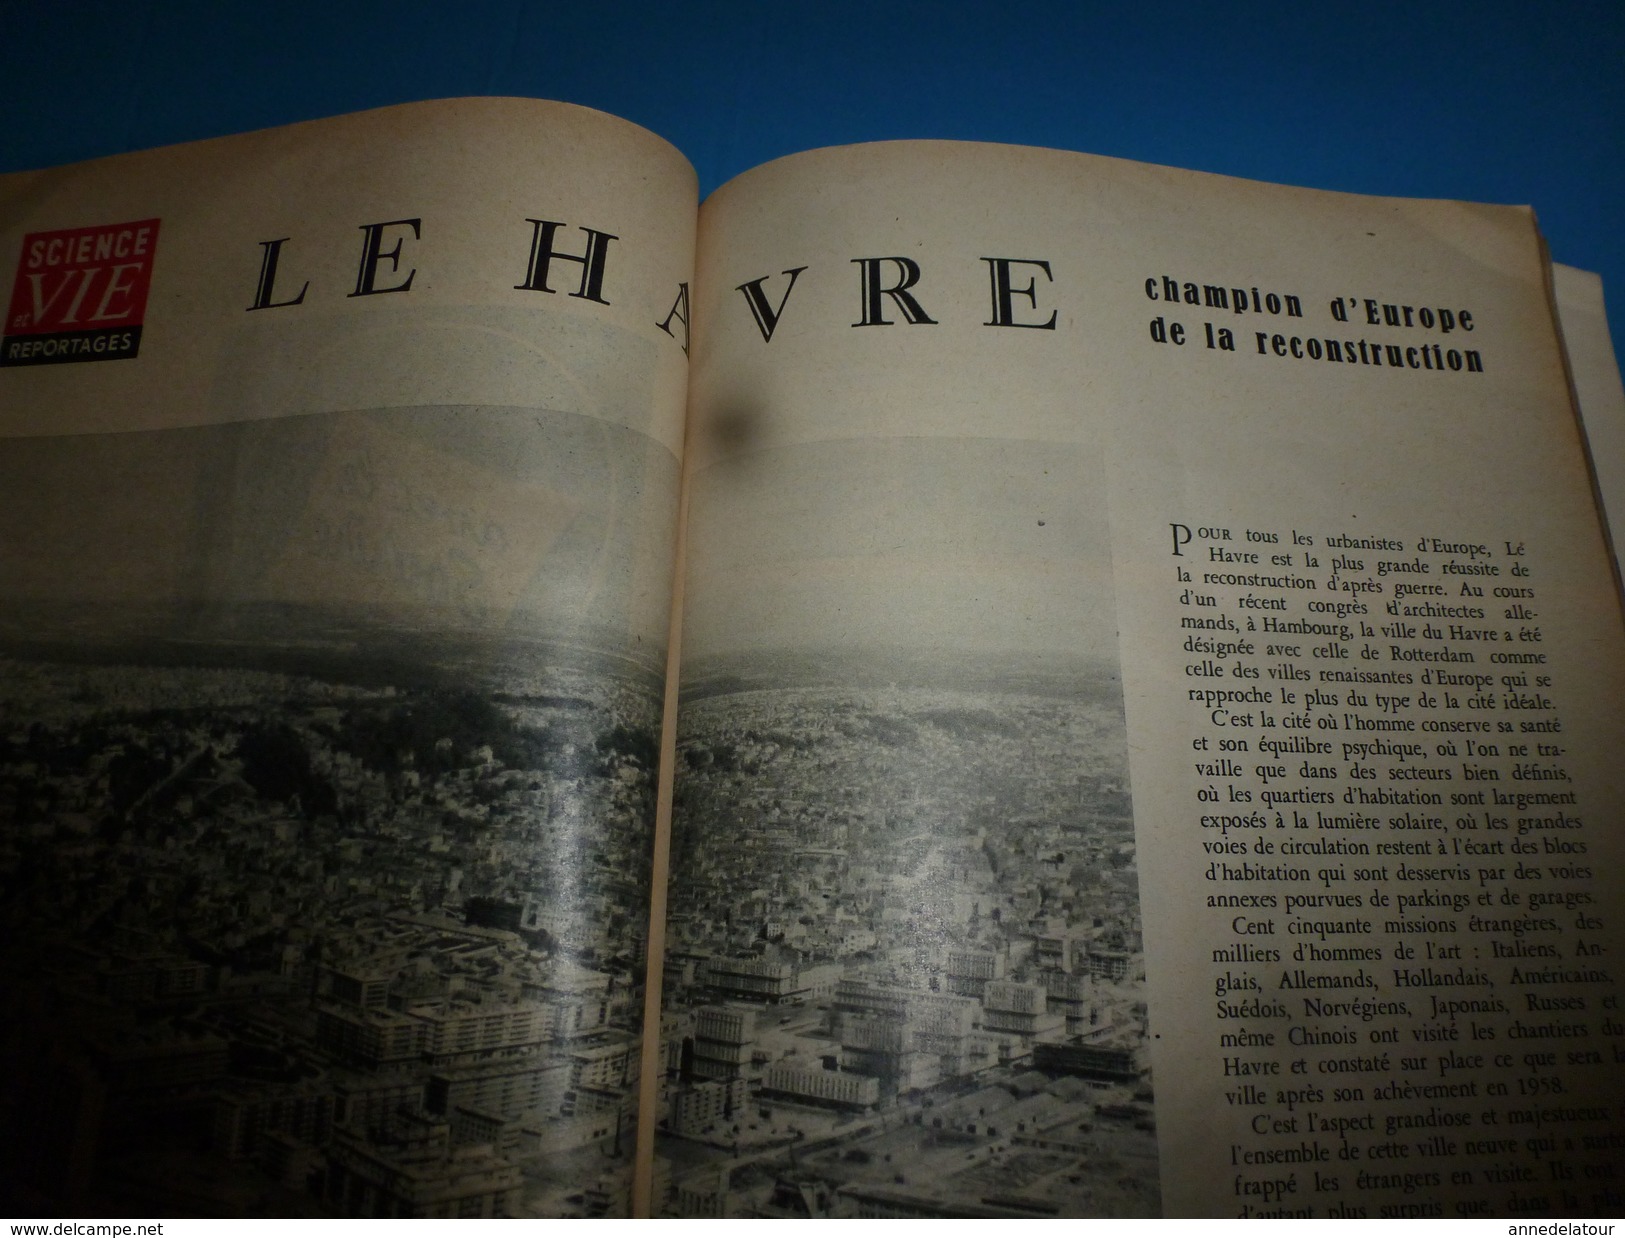 1955 SCIENCE Et VIE  --> Le Havre , Champion D'Europe De La Reconstruction; ALCOOLISME Des Enfants ; Etc - Science